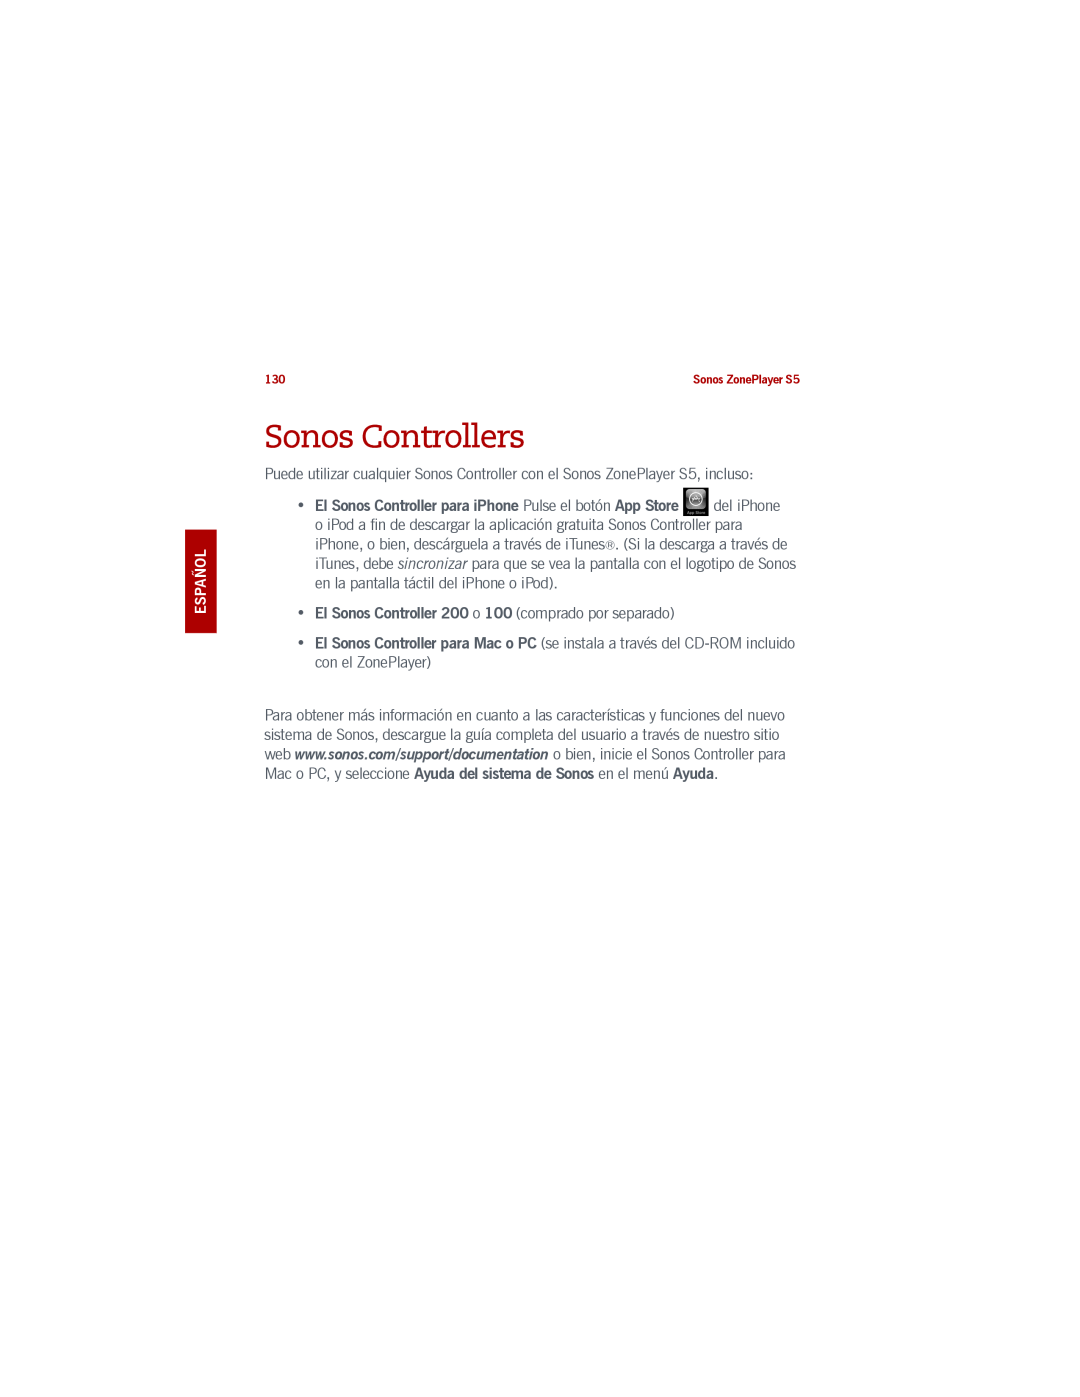 Sonos S5 manual Sonos Controllers, El Sonos Controller 200 o 100 comprado por separado 